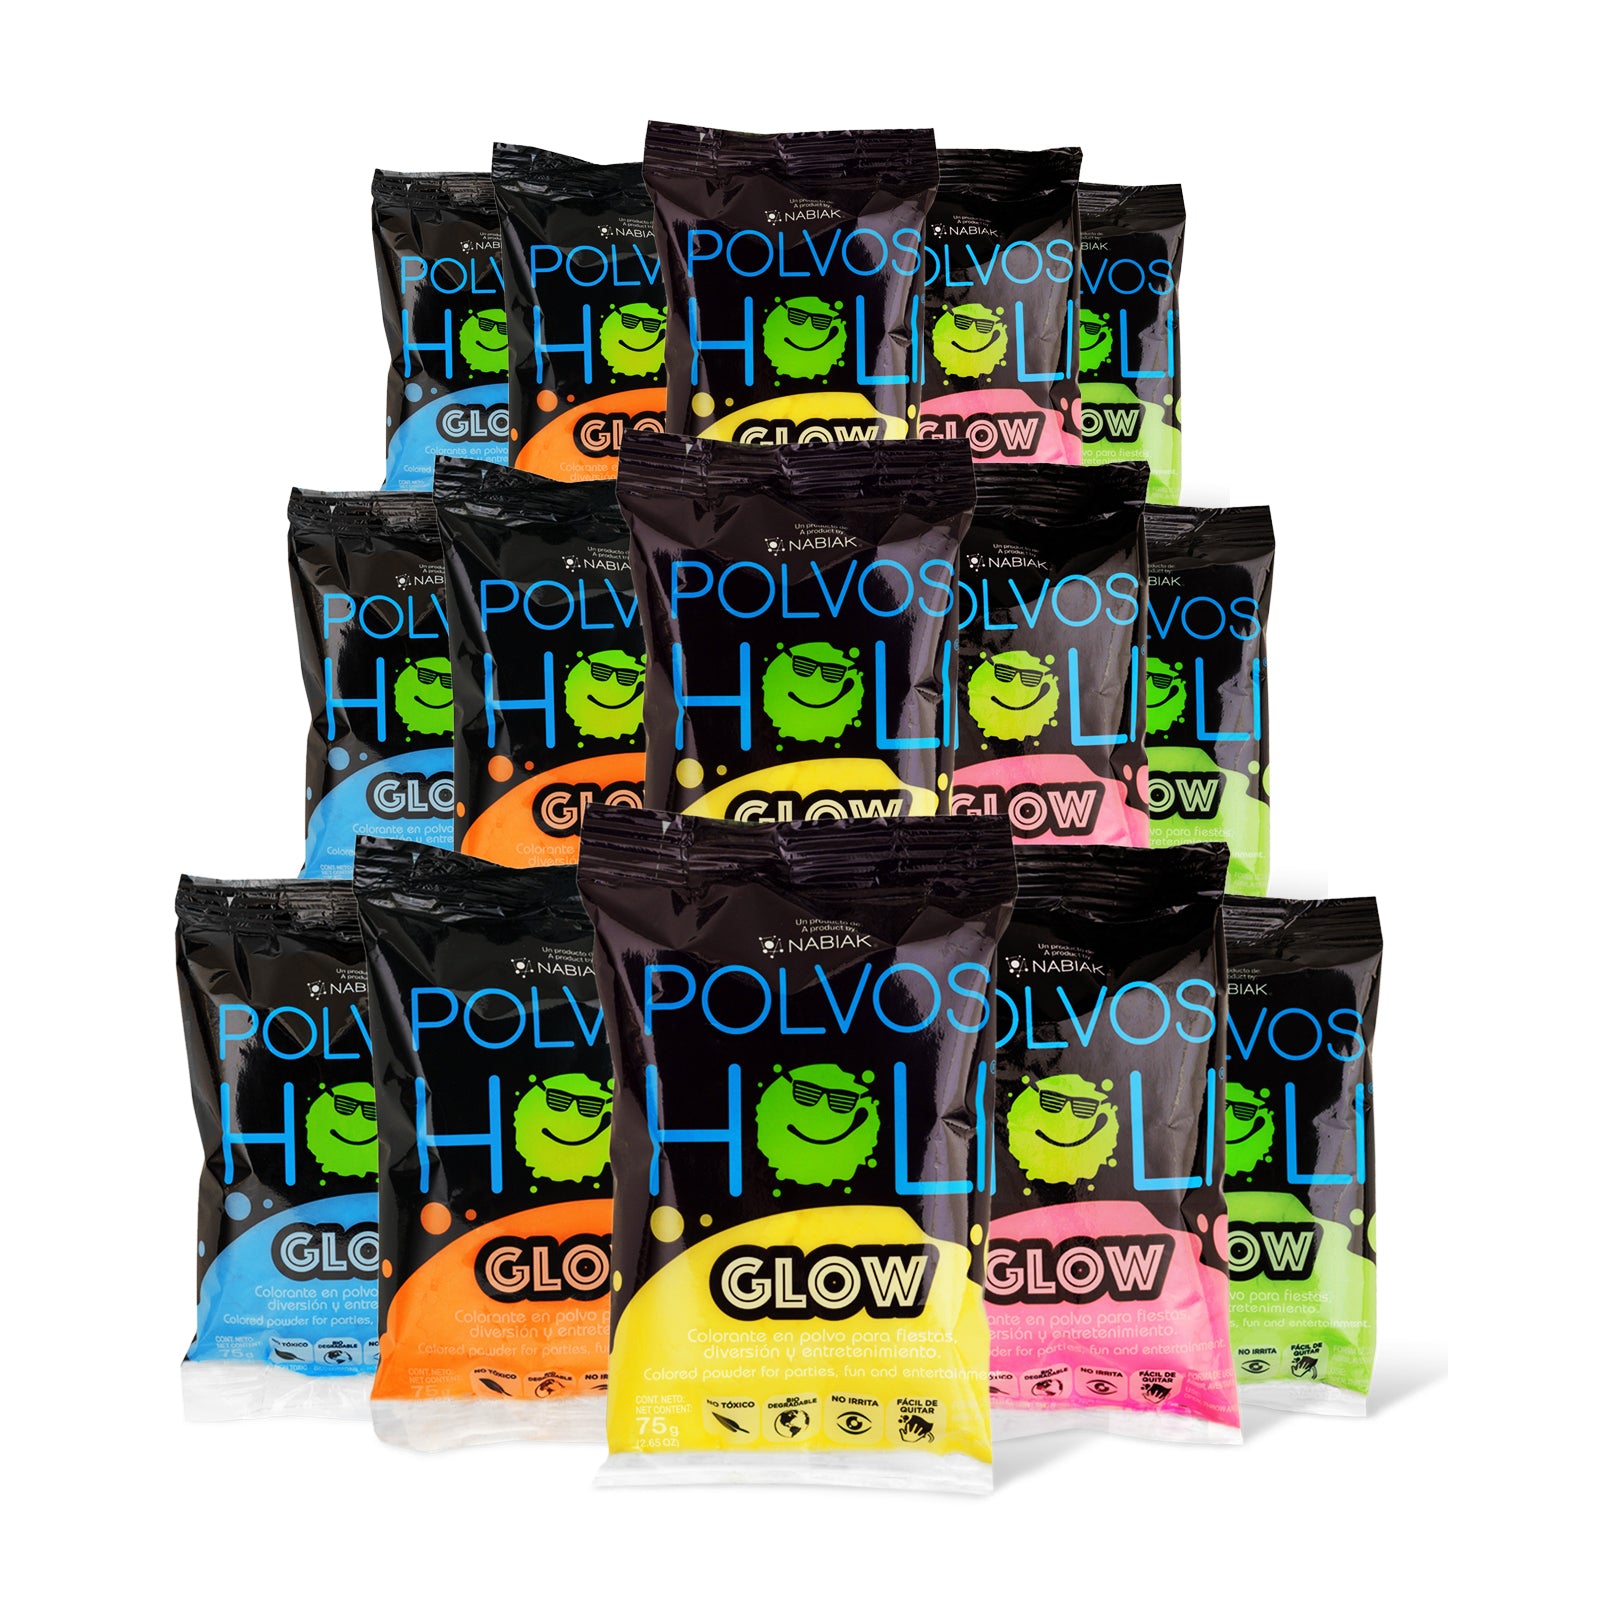 Para Sonreír - Paquete 15 bolsas Polvos Holi 75 g en 5 colores fluorescentes